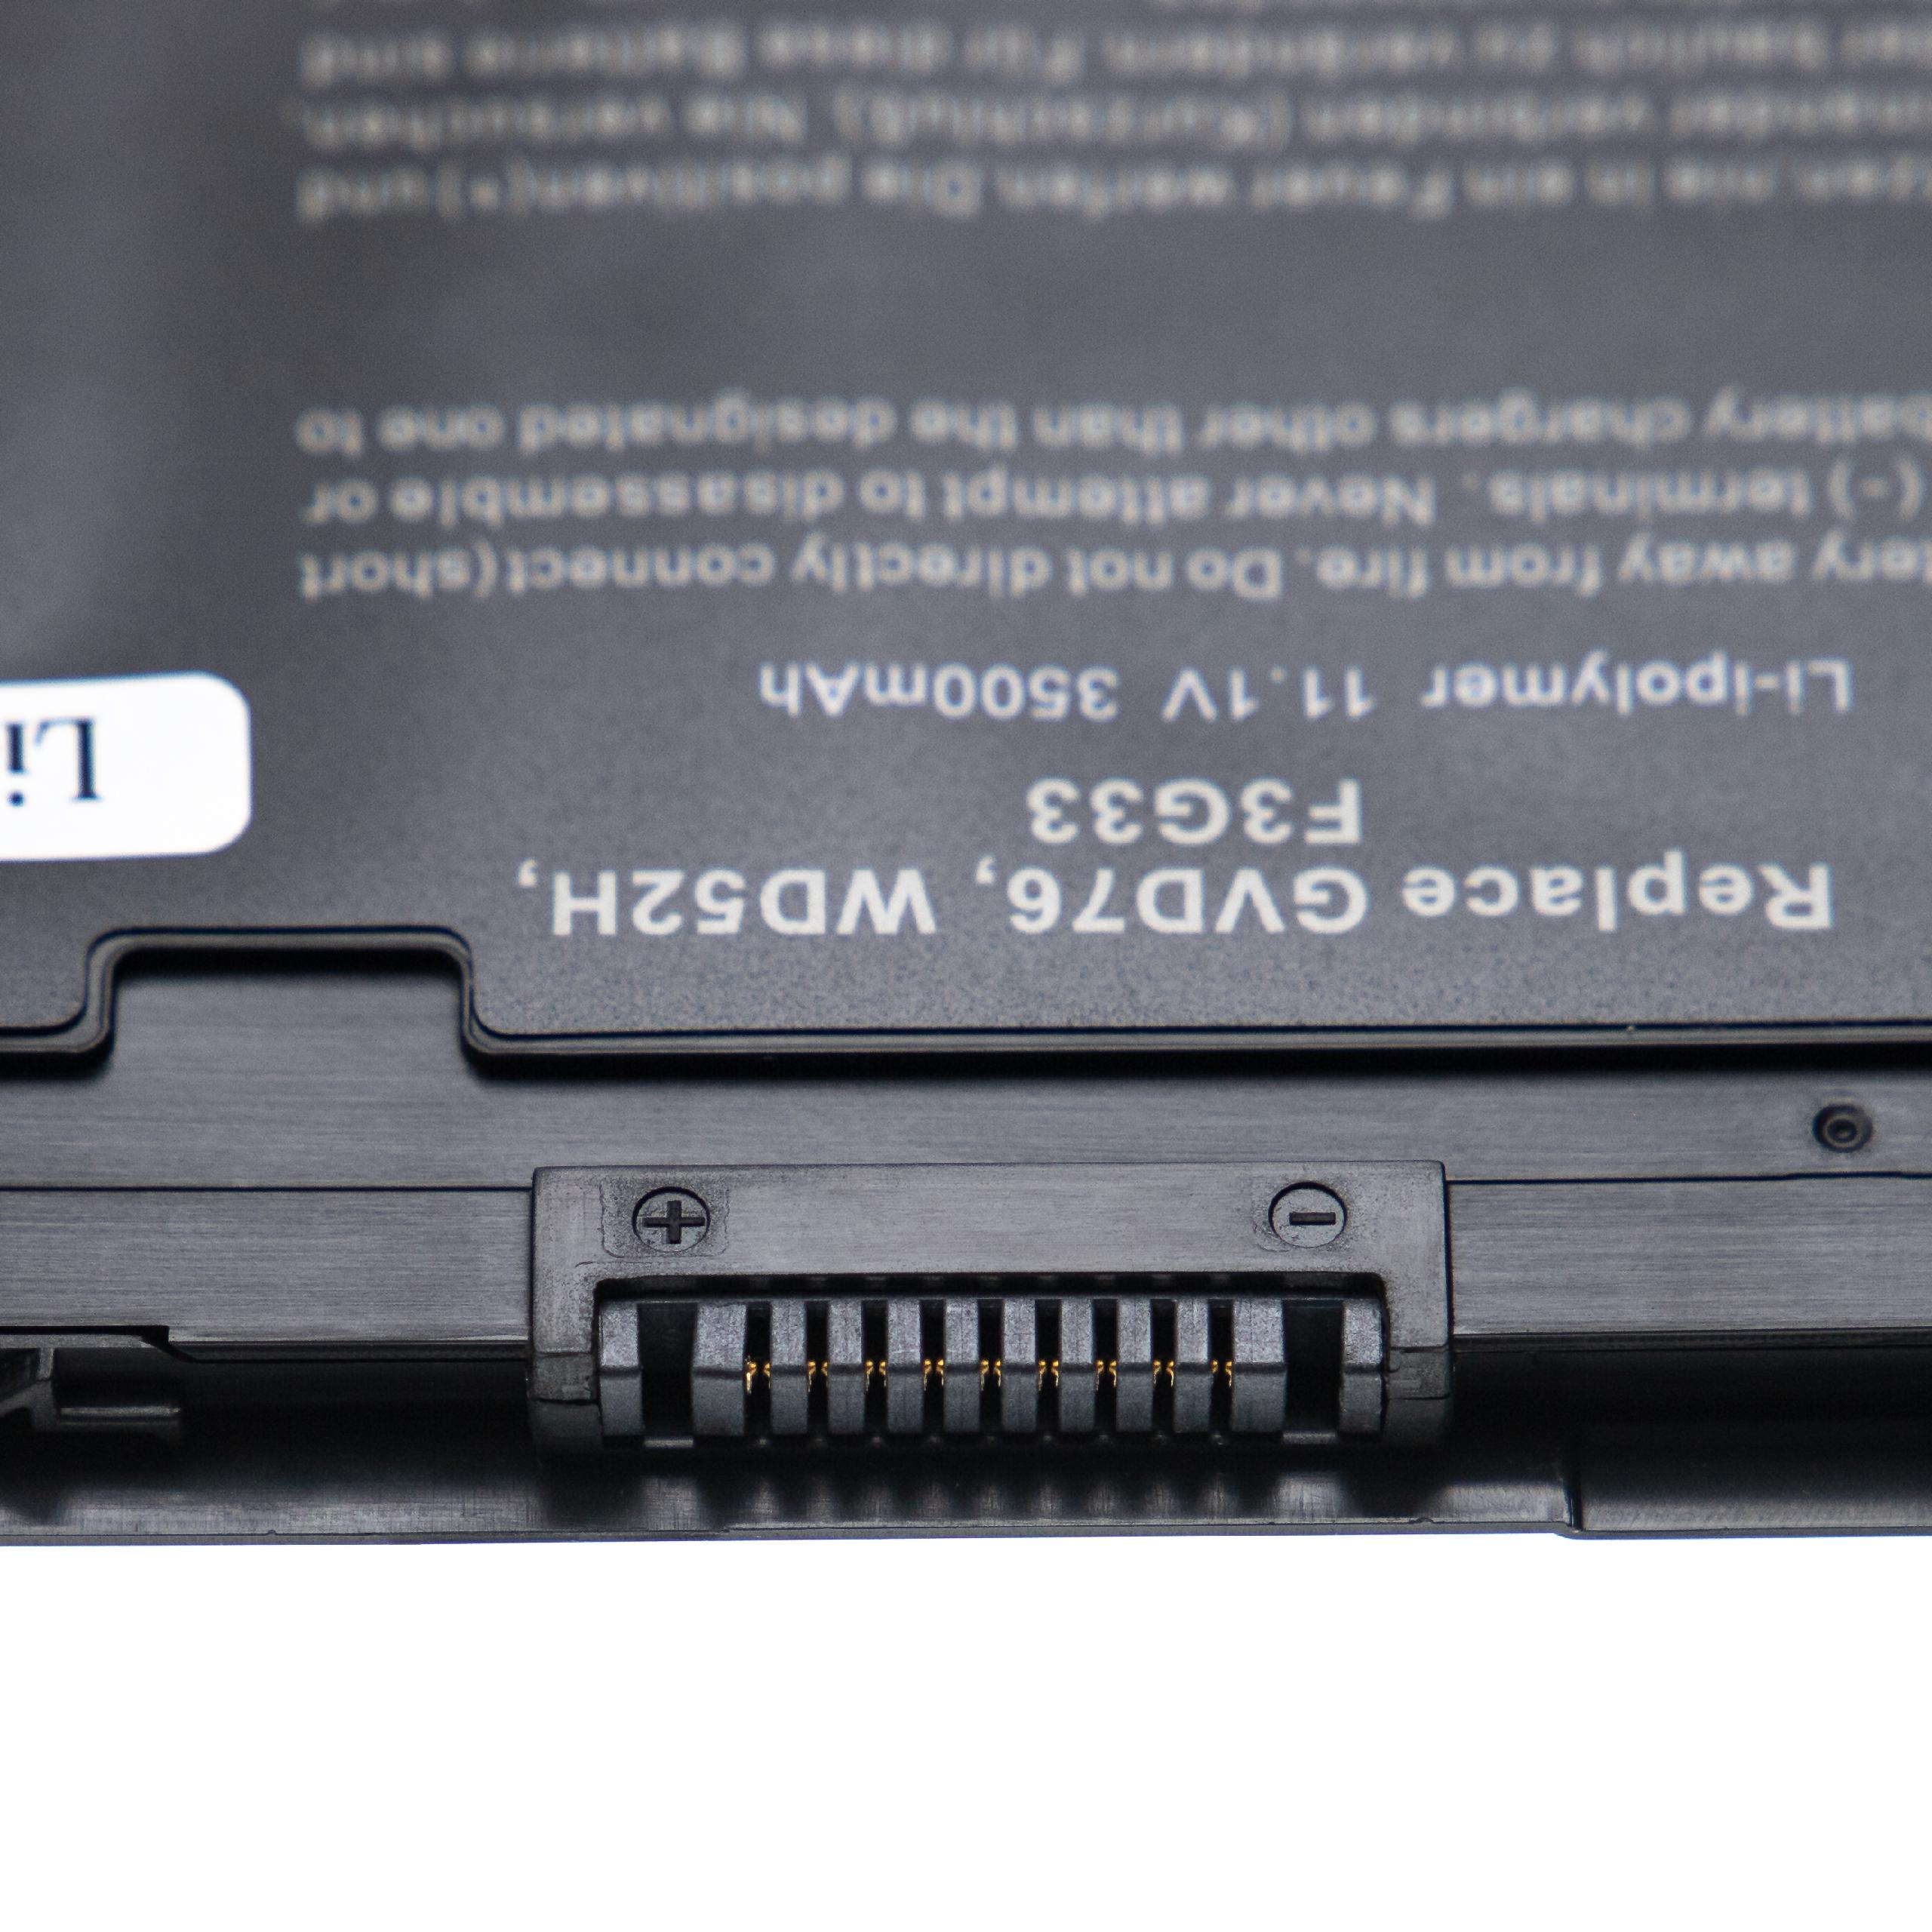 Batterie remplace Dell 3G33, 0W57CV, 451-BBFW, 451-BBFX pour ordinateur portable - 3500mAh 11,1V Li-ion, noir